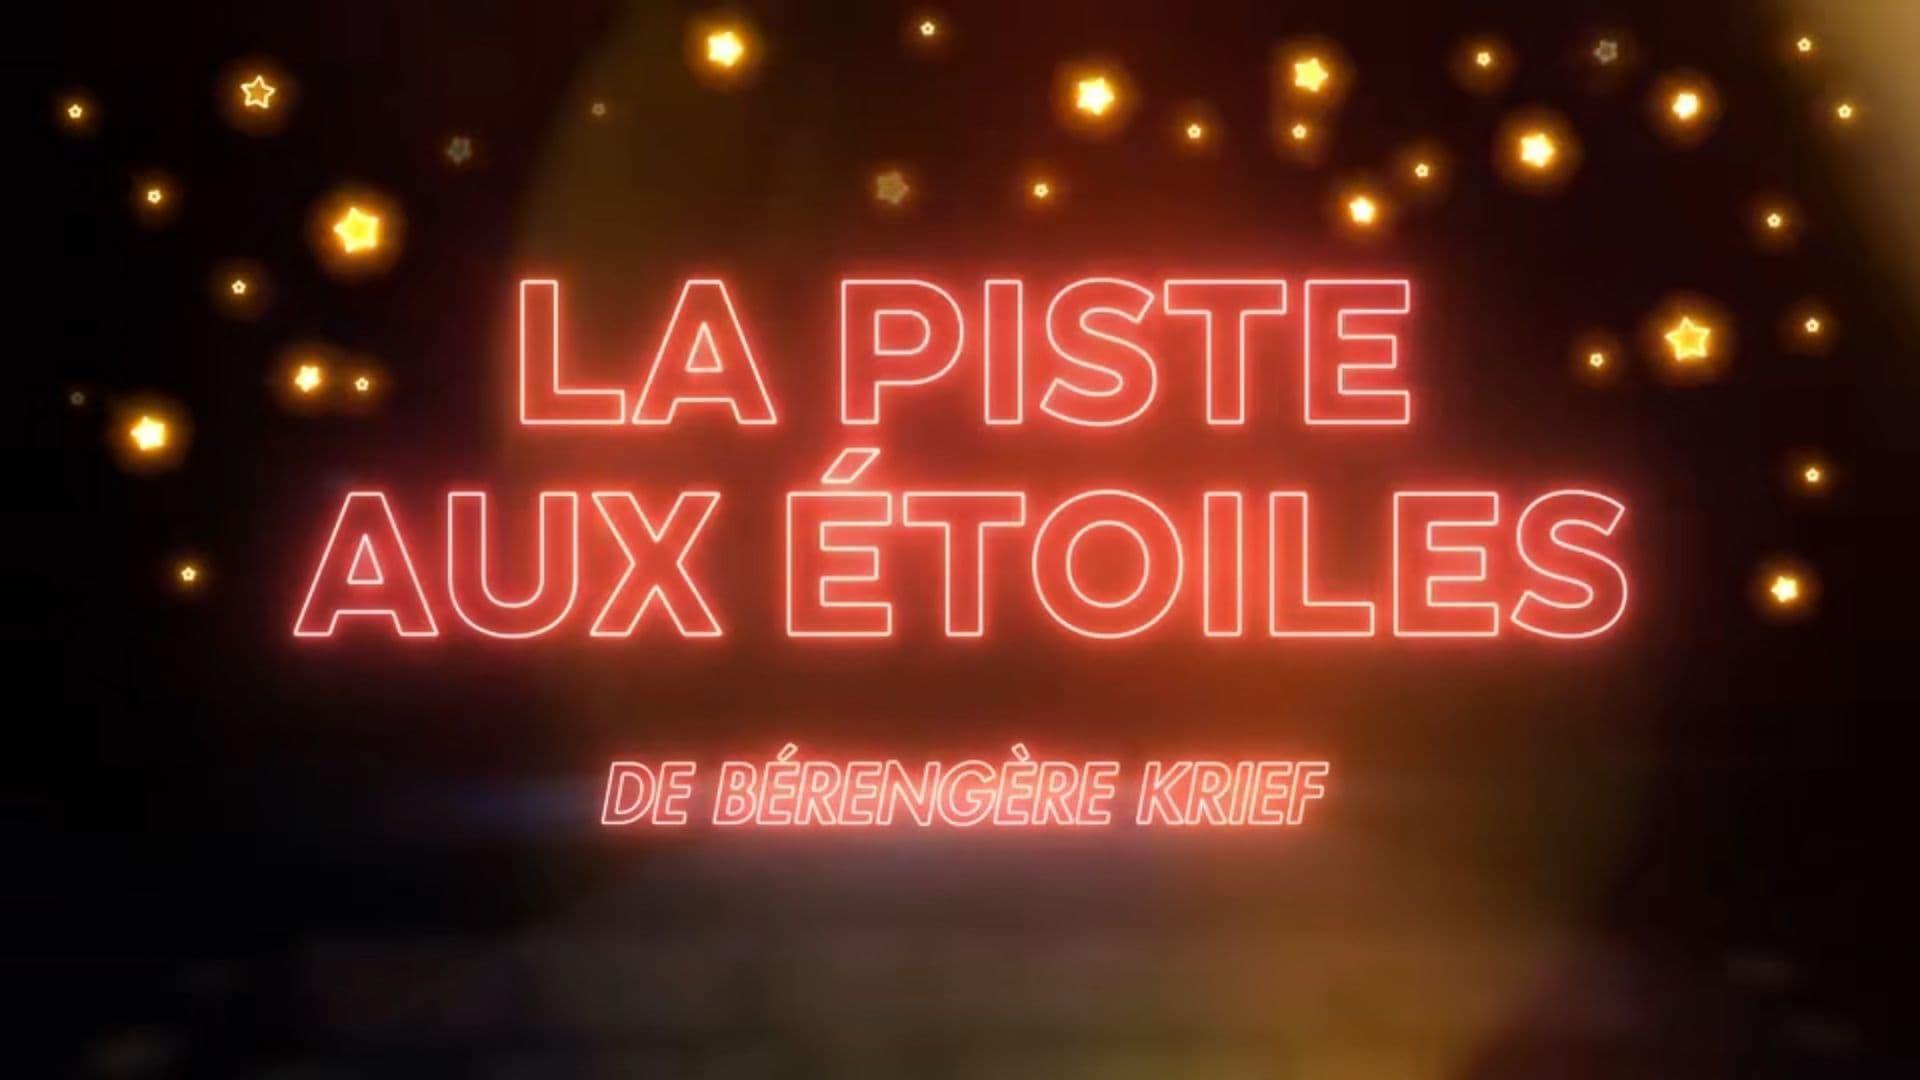 Montreux Comedy Festival 2022 - La piste aux étoiles de Bérengère Krief backdrop